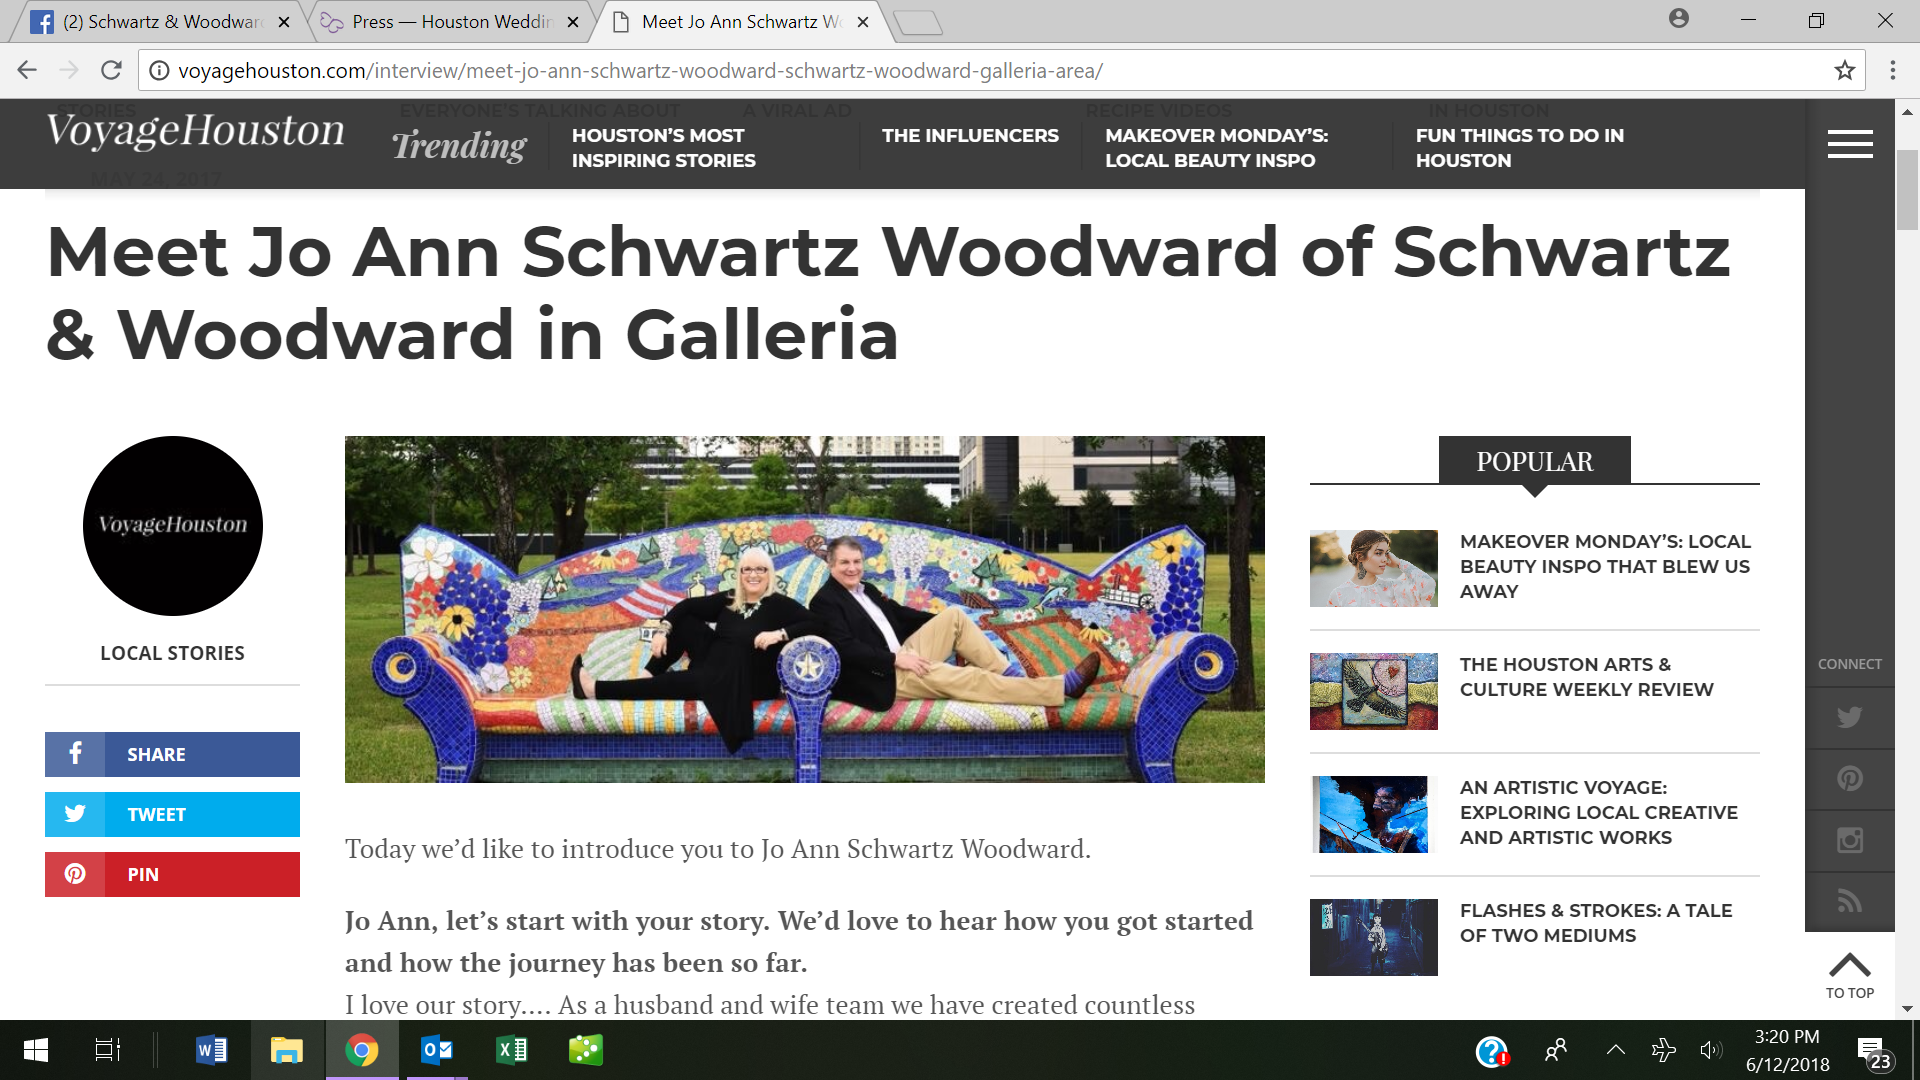  http://voyagehouston.com/interview/meet-jo-ann-schwartz-woodward-schwartz-woodward-galleria-area/ 